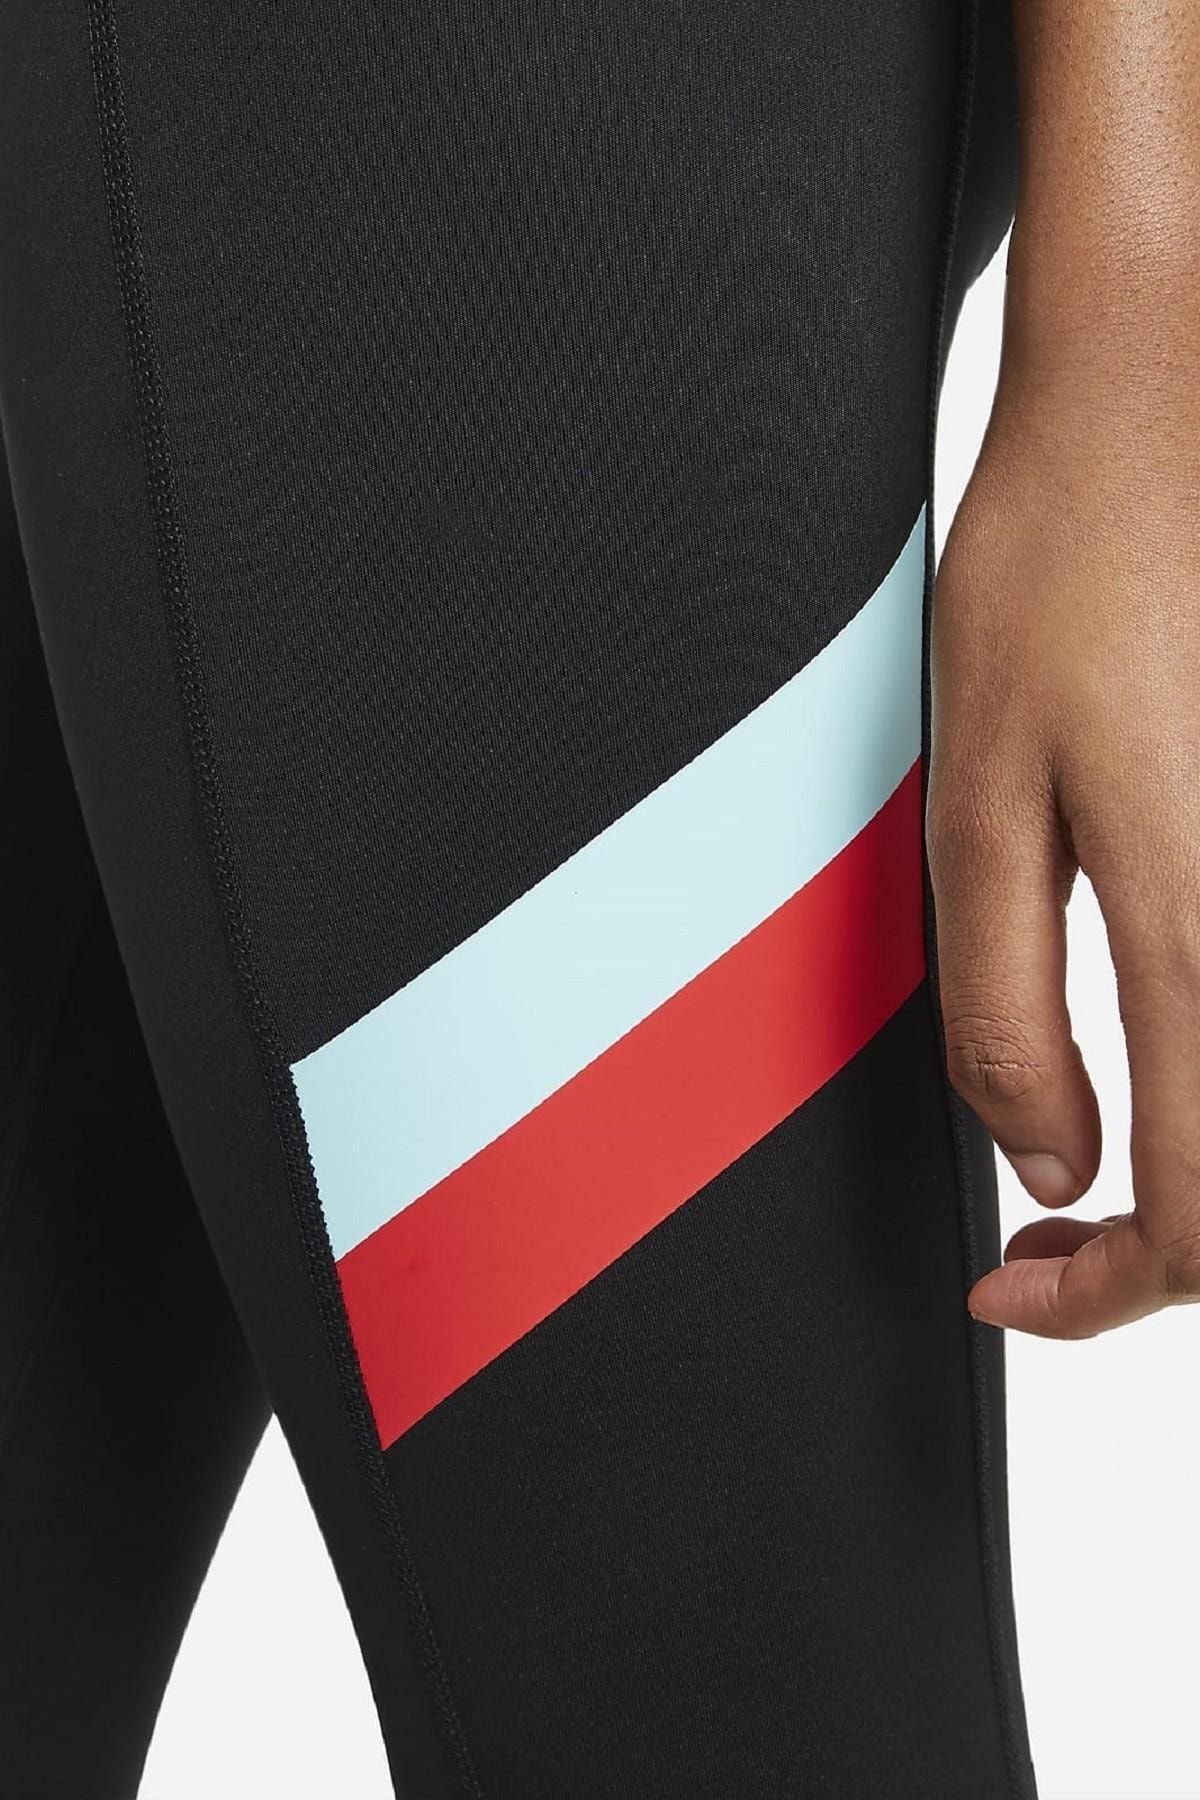 Nike Dry Performance One Tight Renk Bloklu Çizgili 7/8 Kadın Taytı, 58%'YE  KADAR İNDİRİM